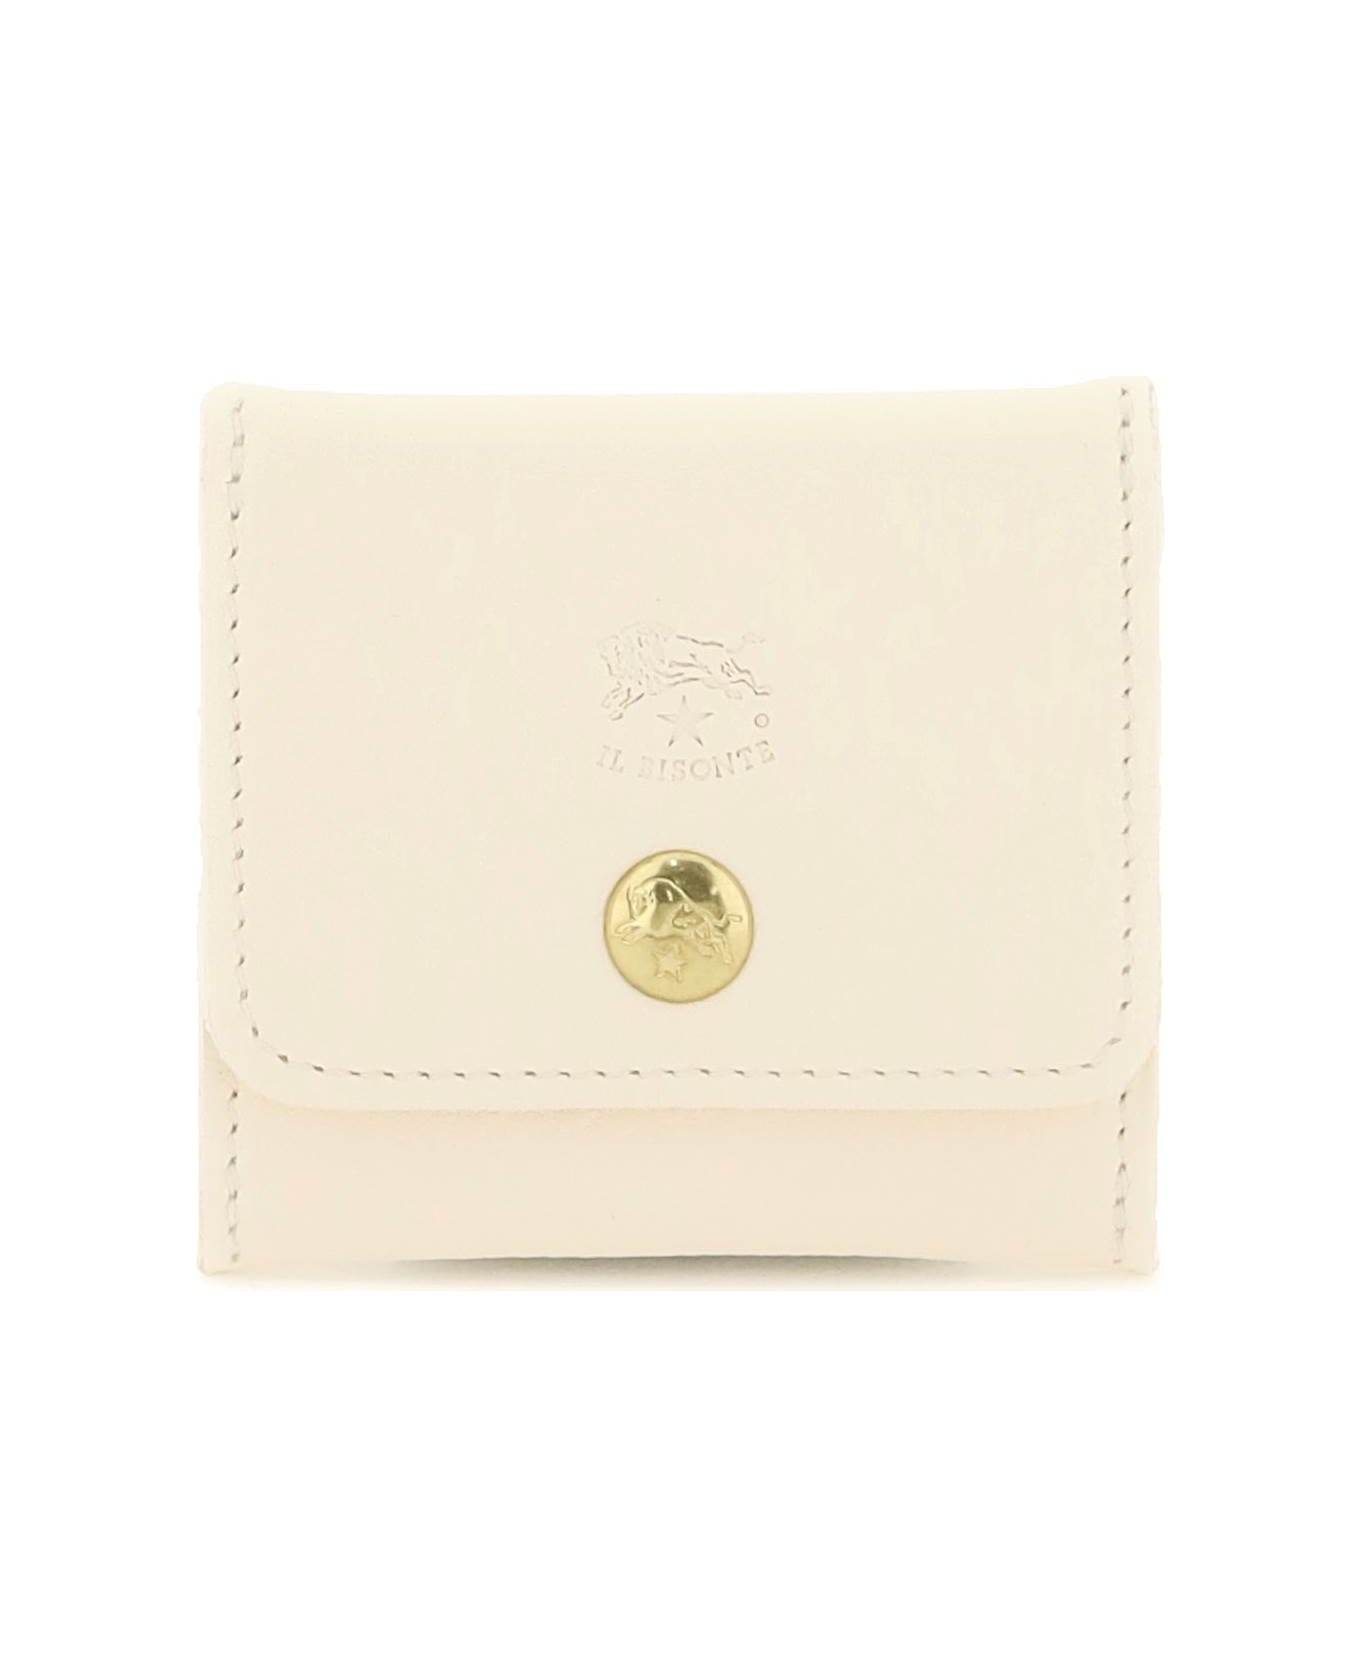 Il Bisonte Soft Calf Leather Coin Purse - BIANCO LATTE (White)